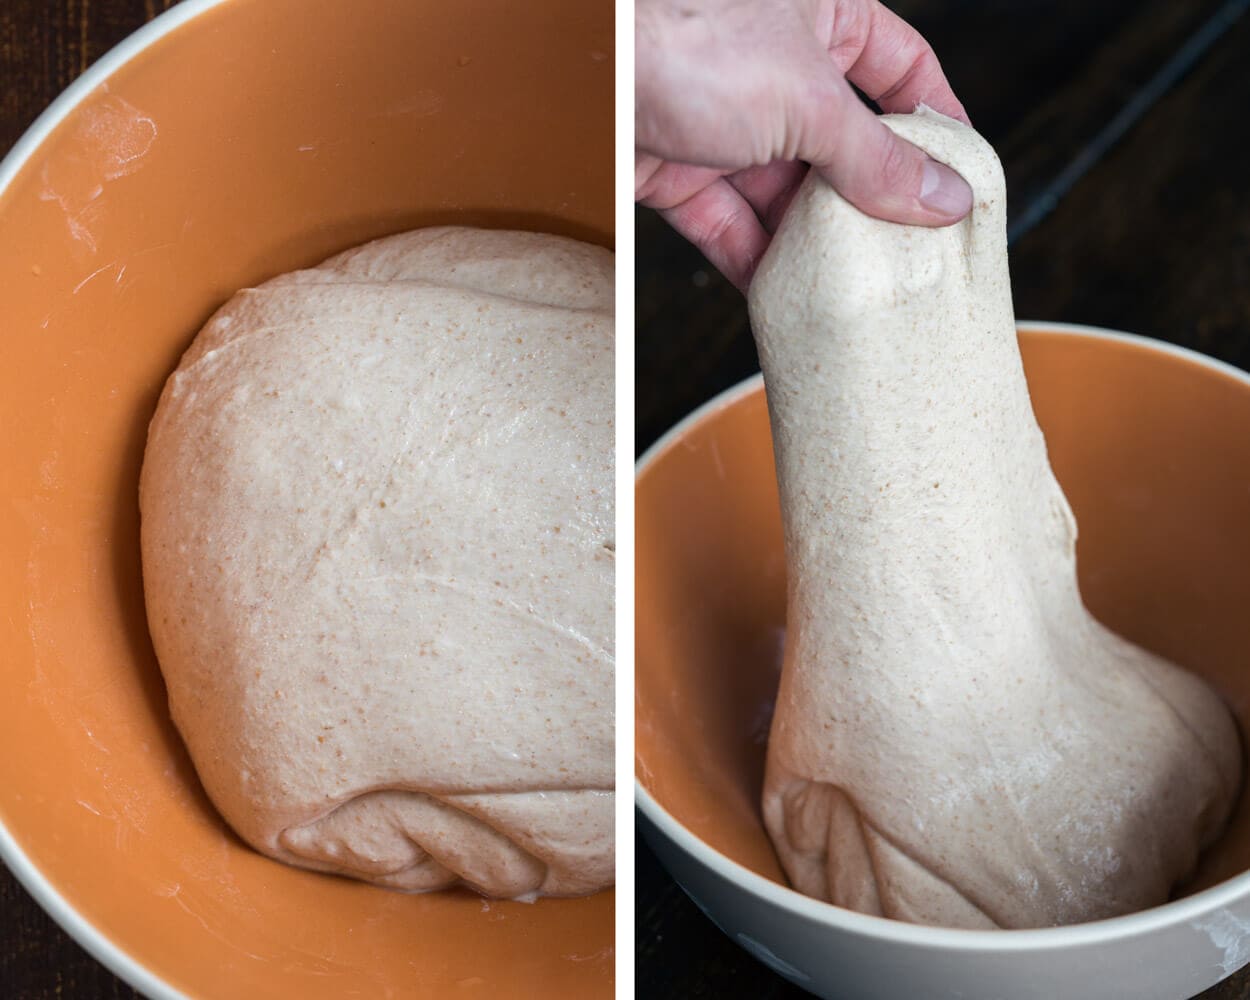 extensible dough